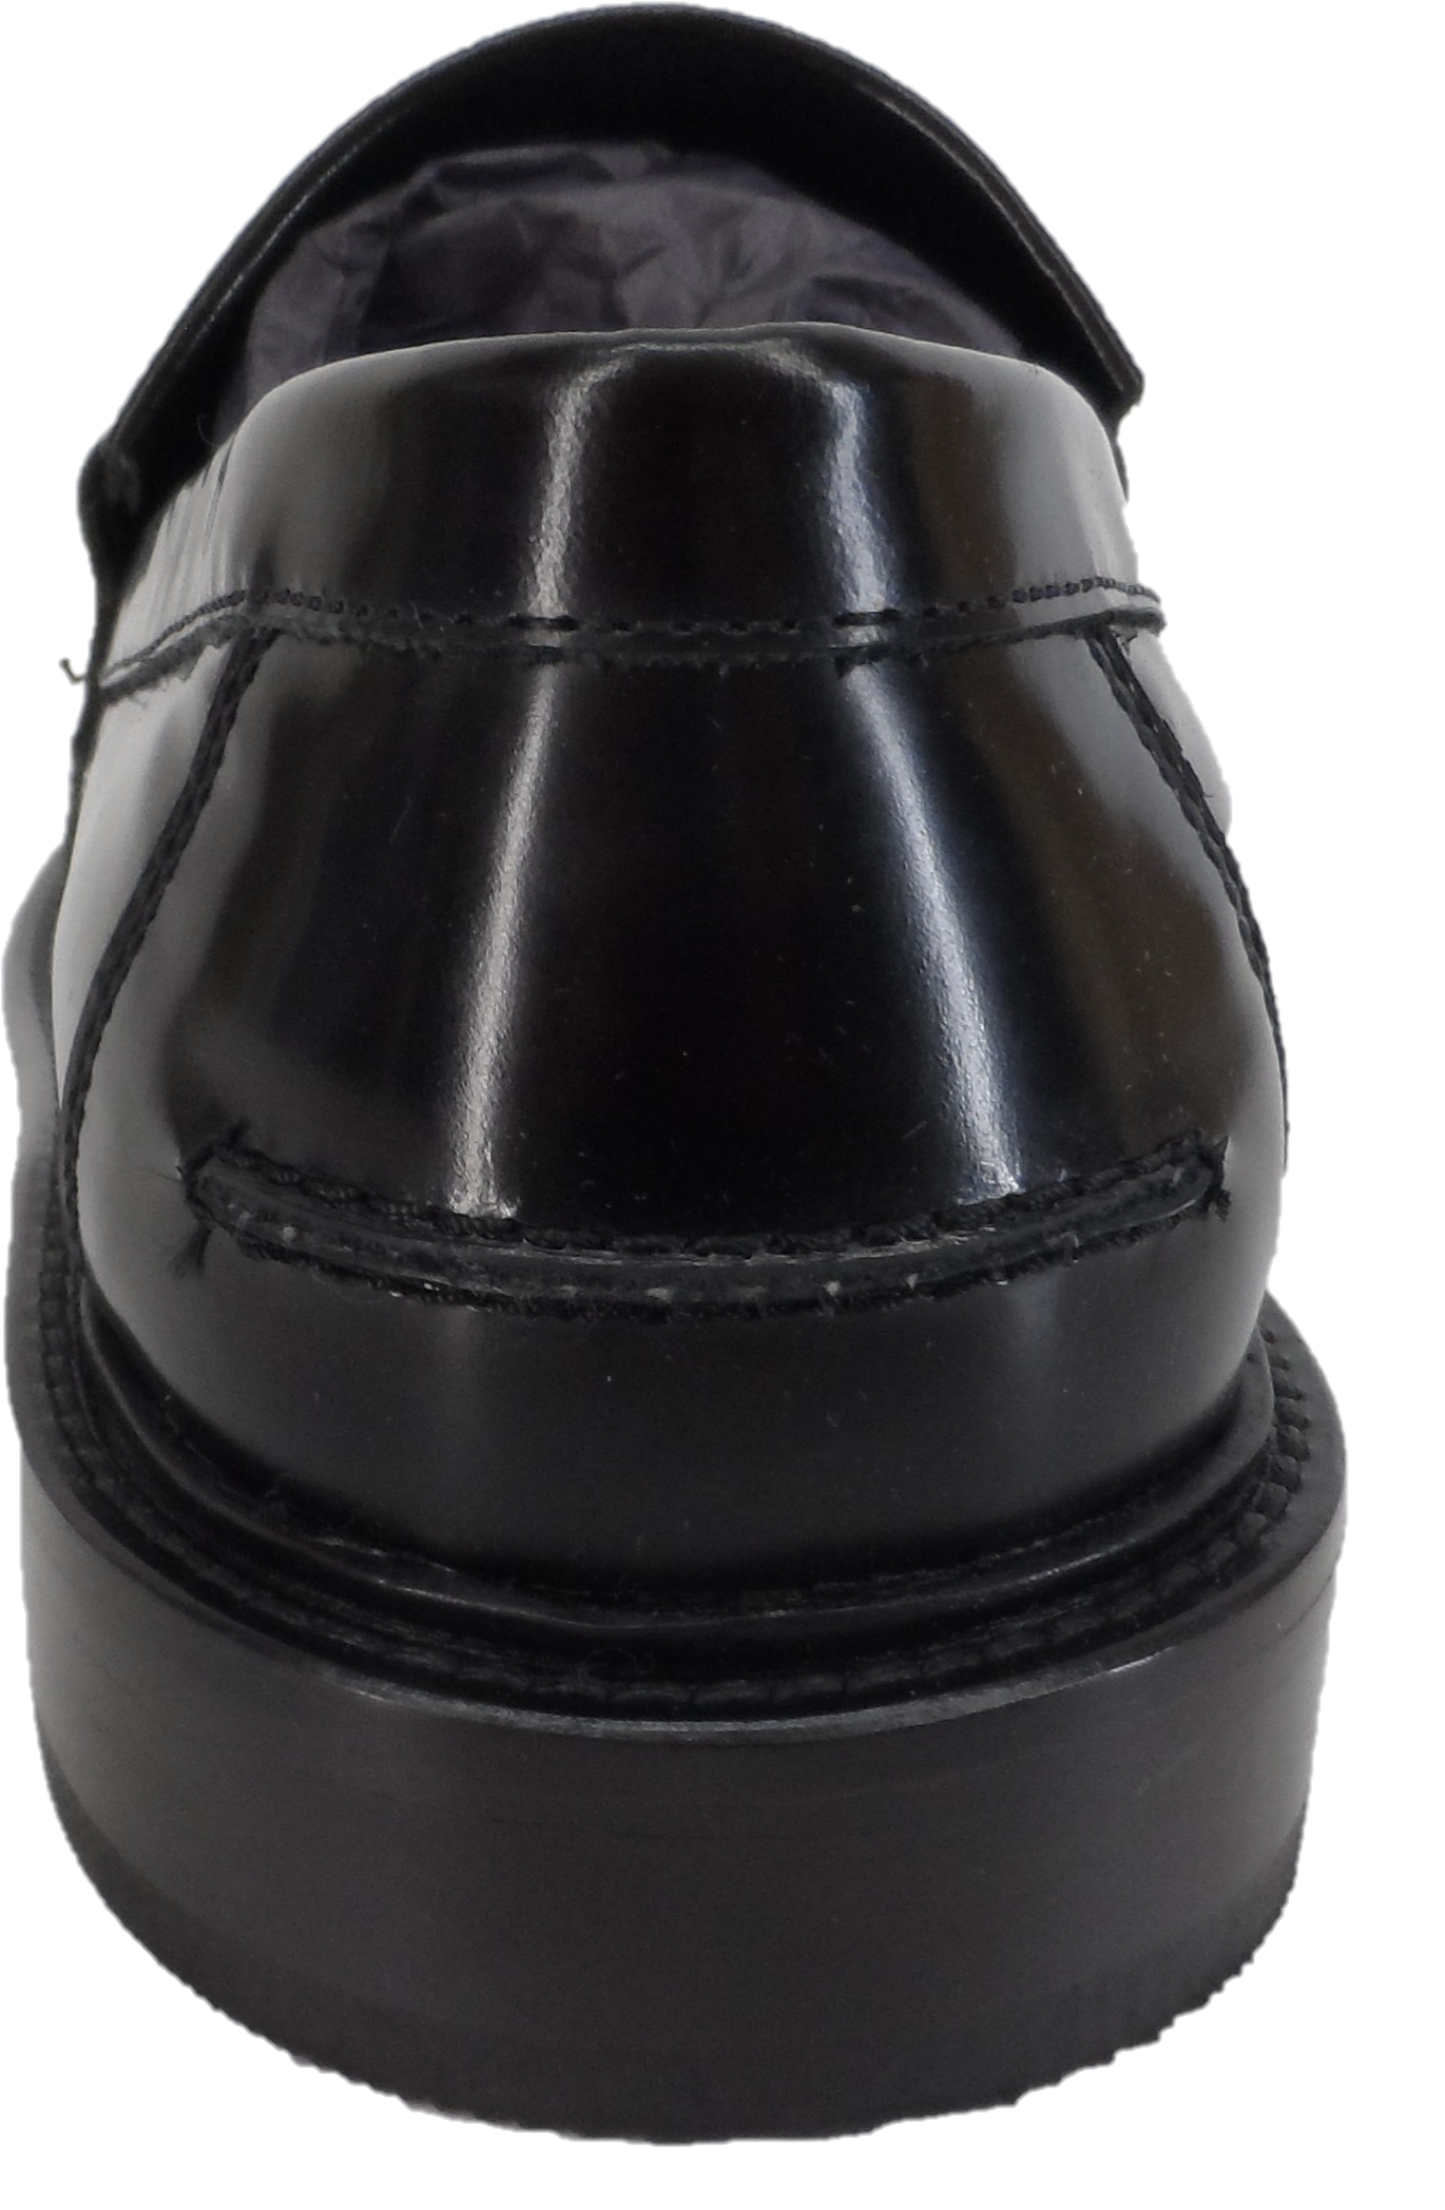 حذاء لوفر Delicious Junction بروميل باللون الأسود الحقيقي مصنوع من نسيج بيني